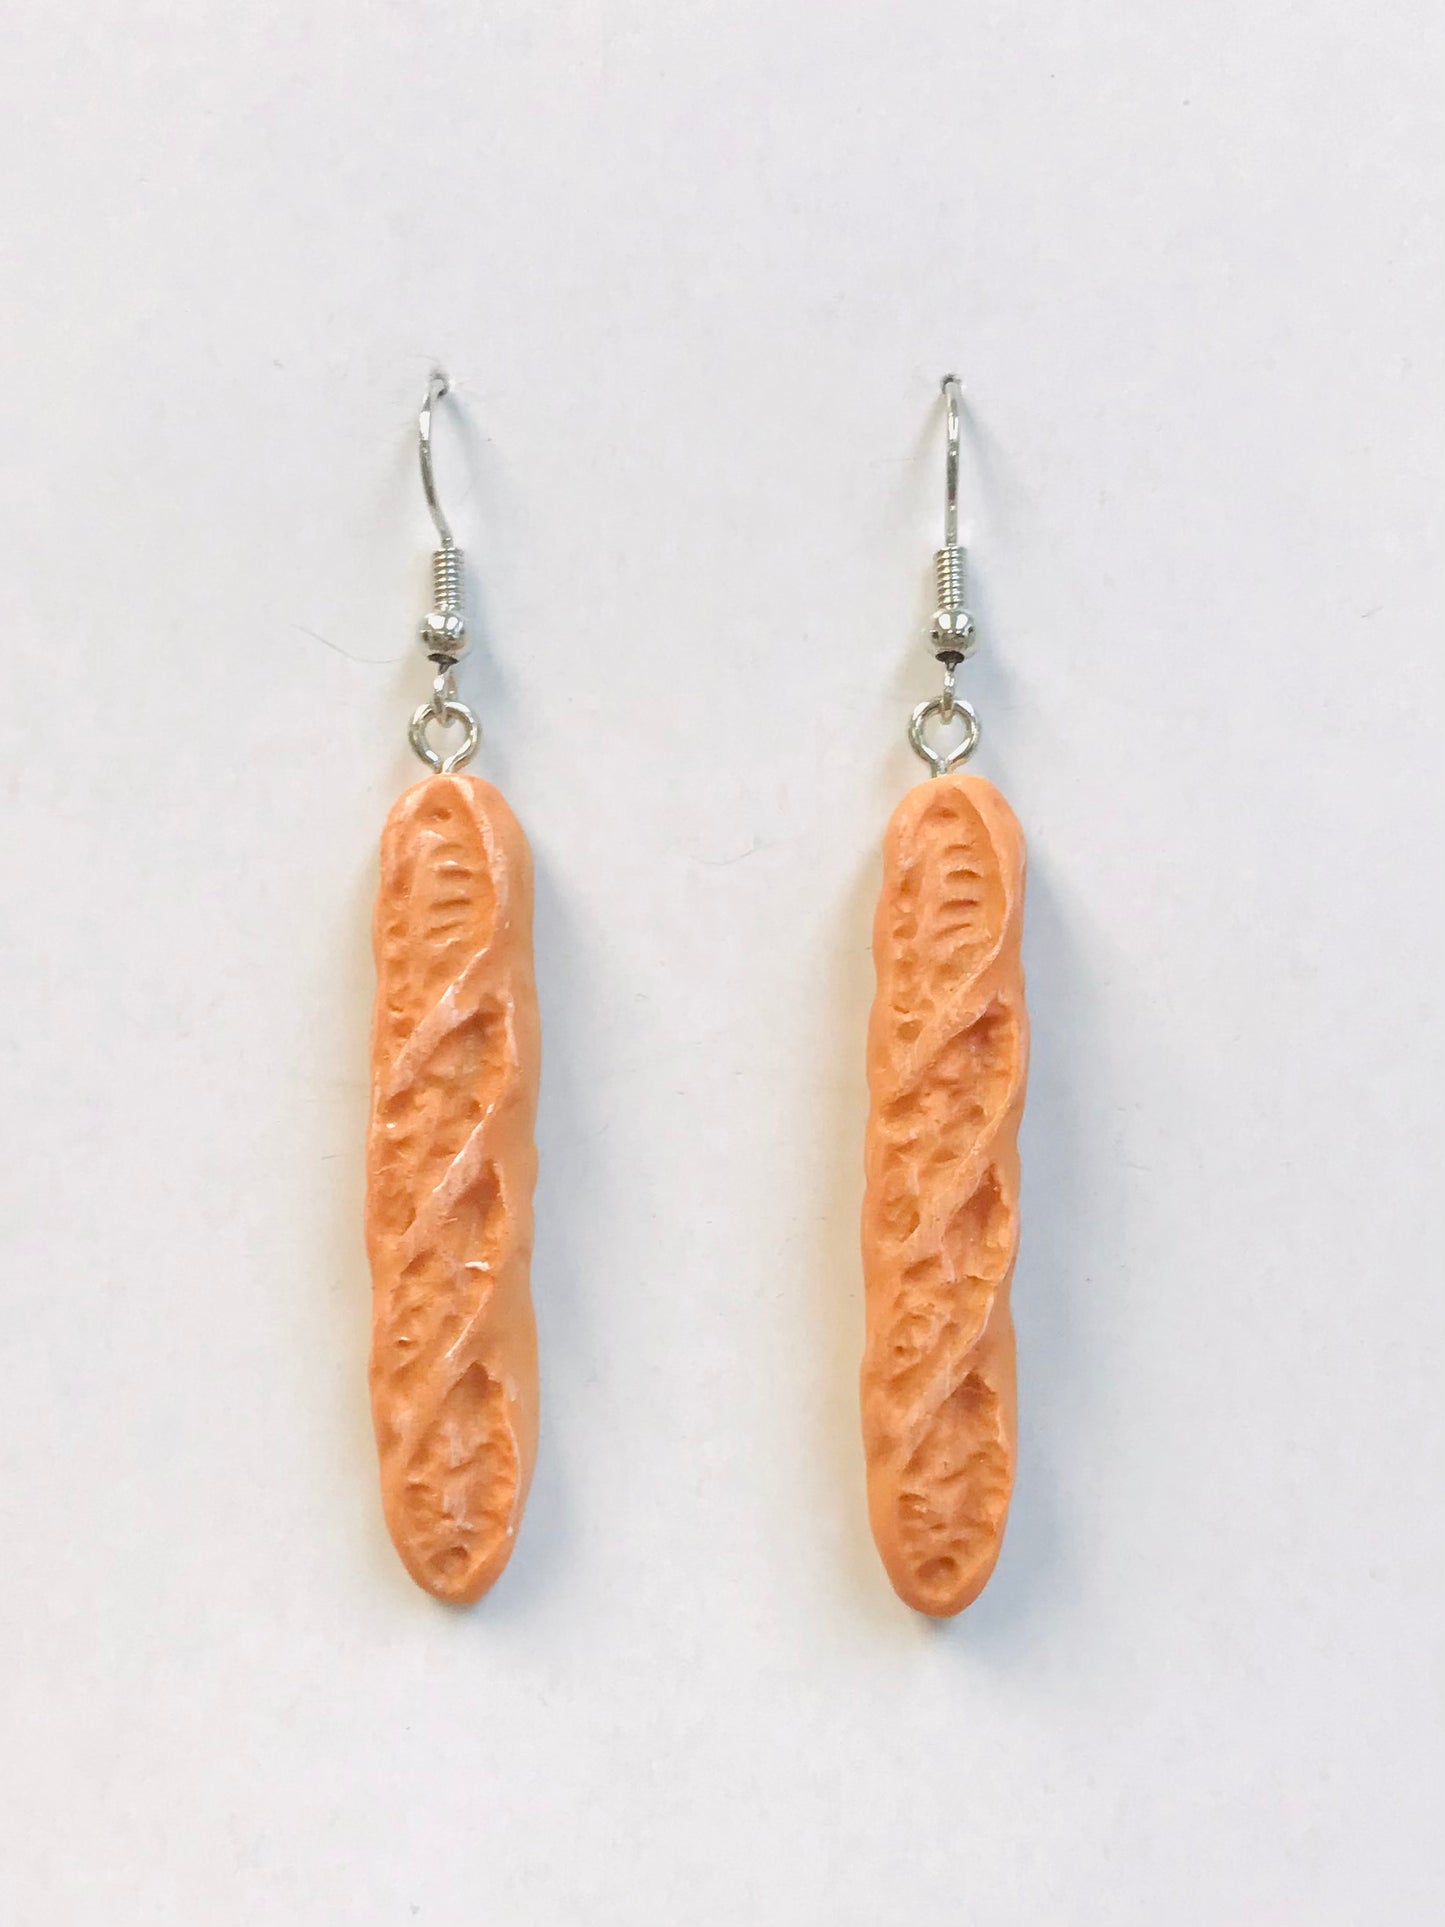 2 French Bread Earrings